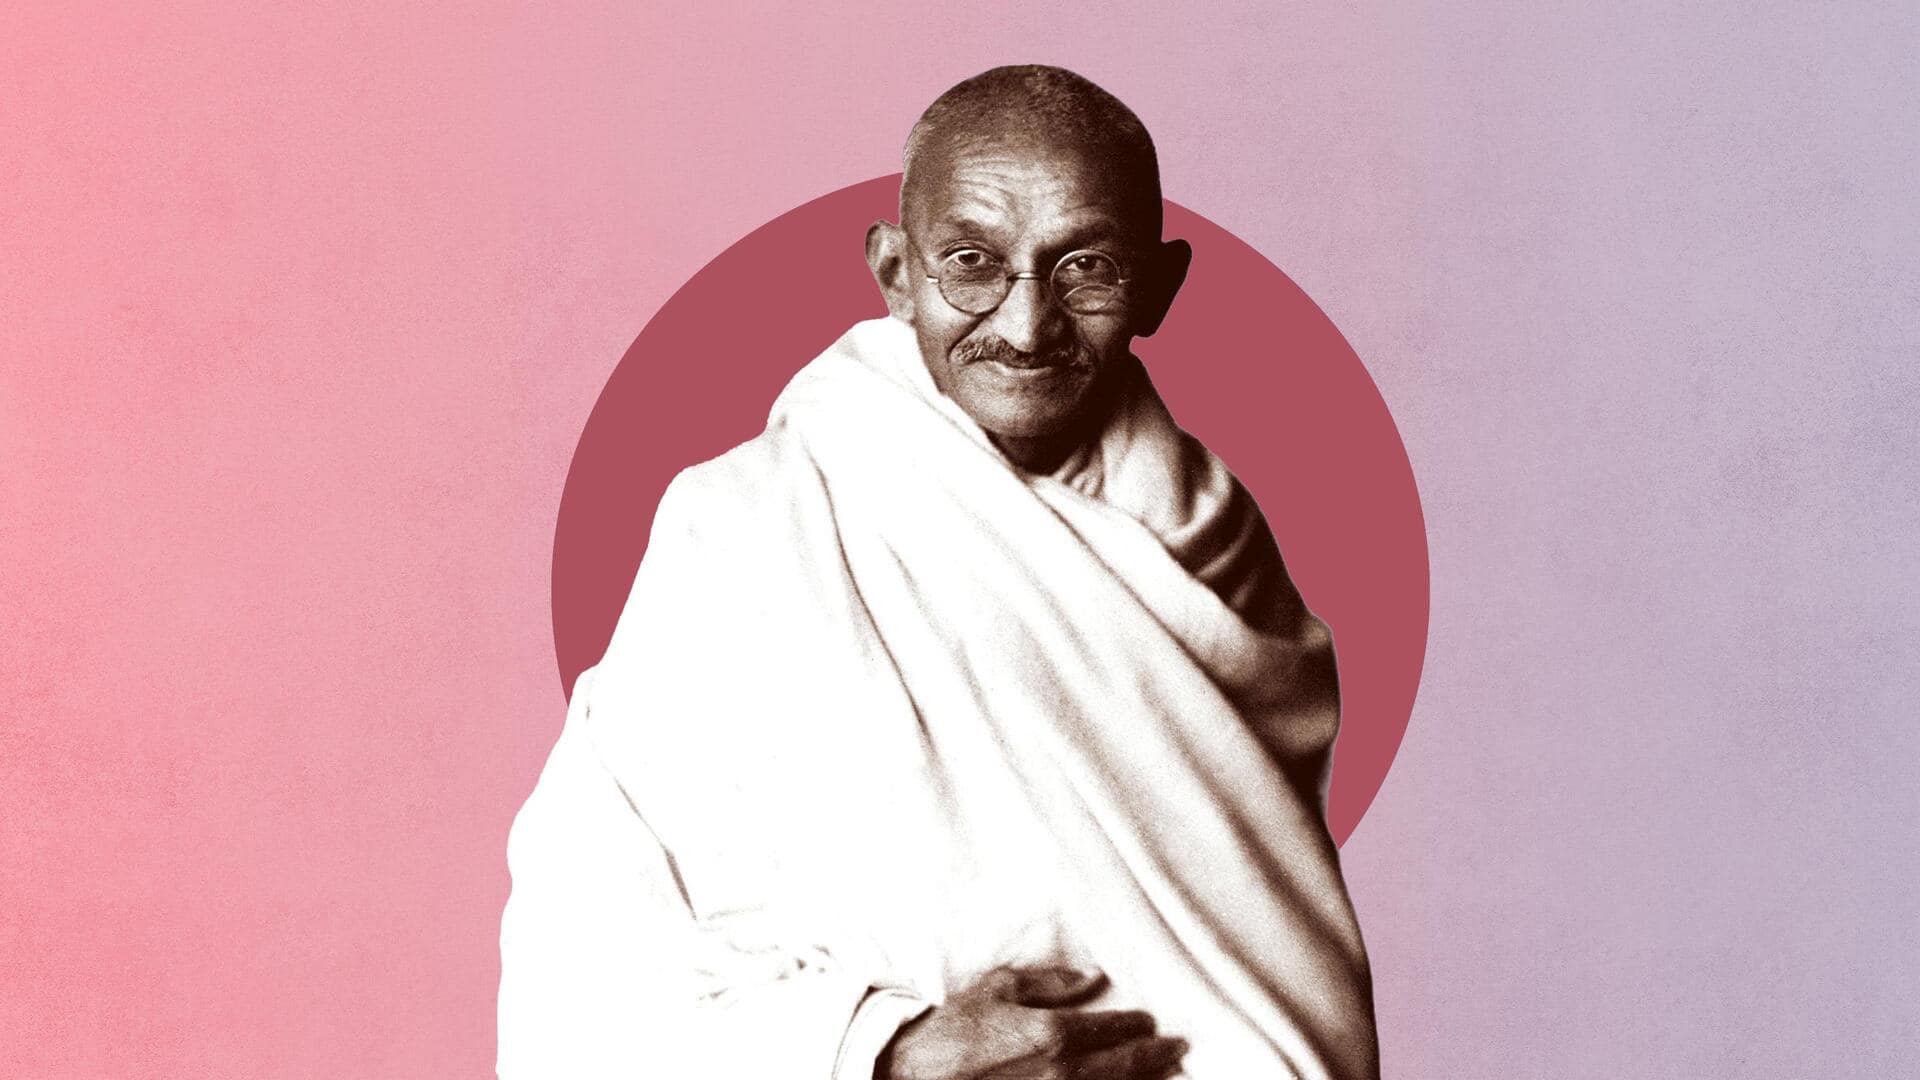 गांधी जयंती: जानिए इस दिन को मनाने का कारण, महत्व और अन्य जरूरी बातें